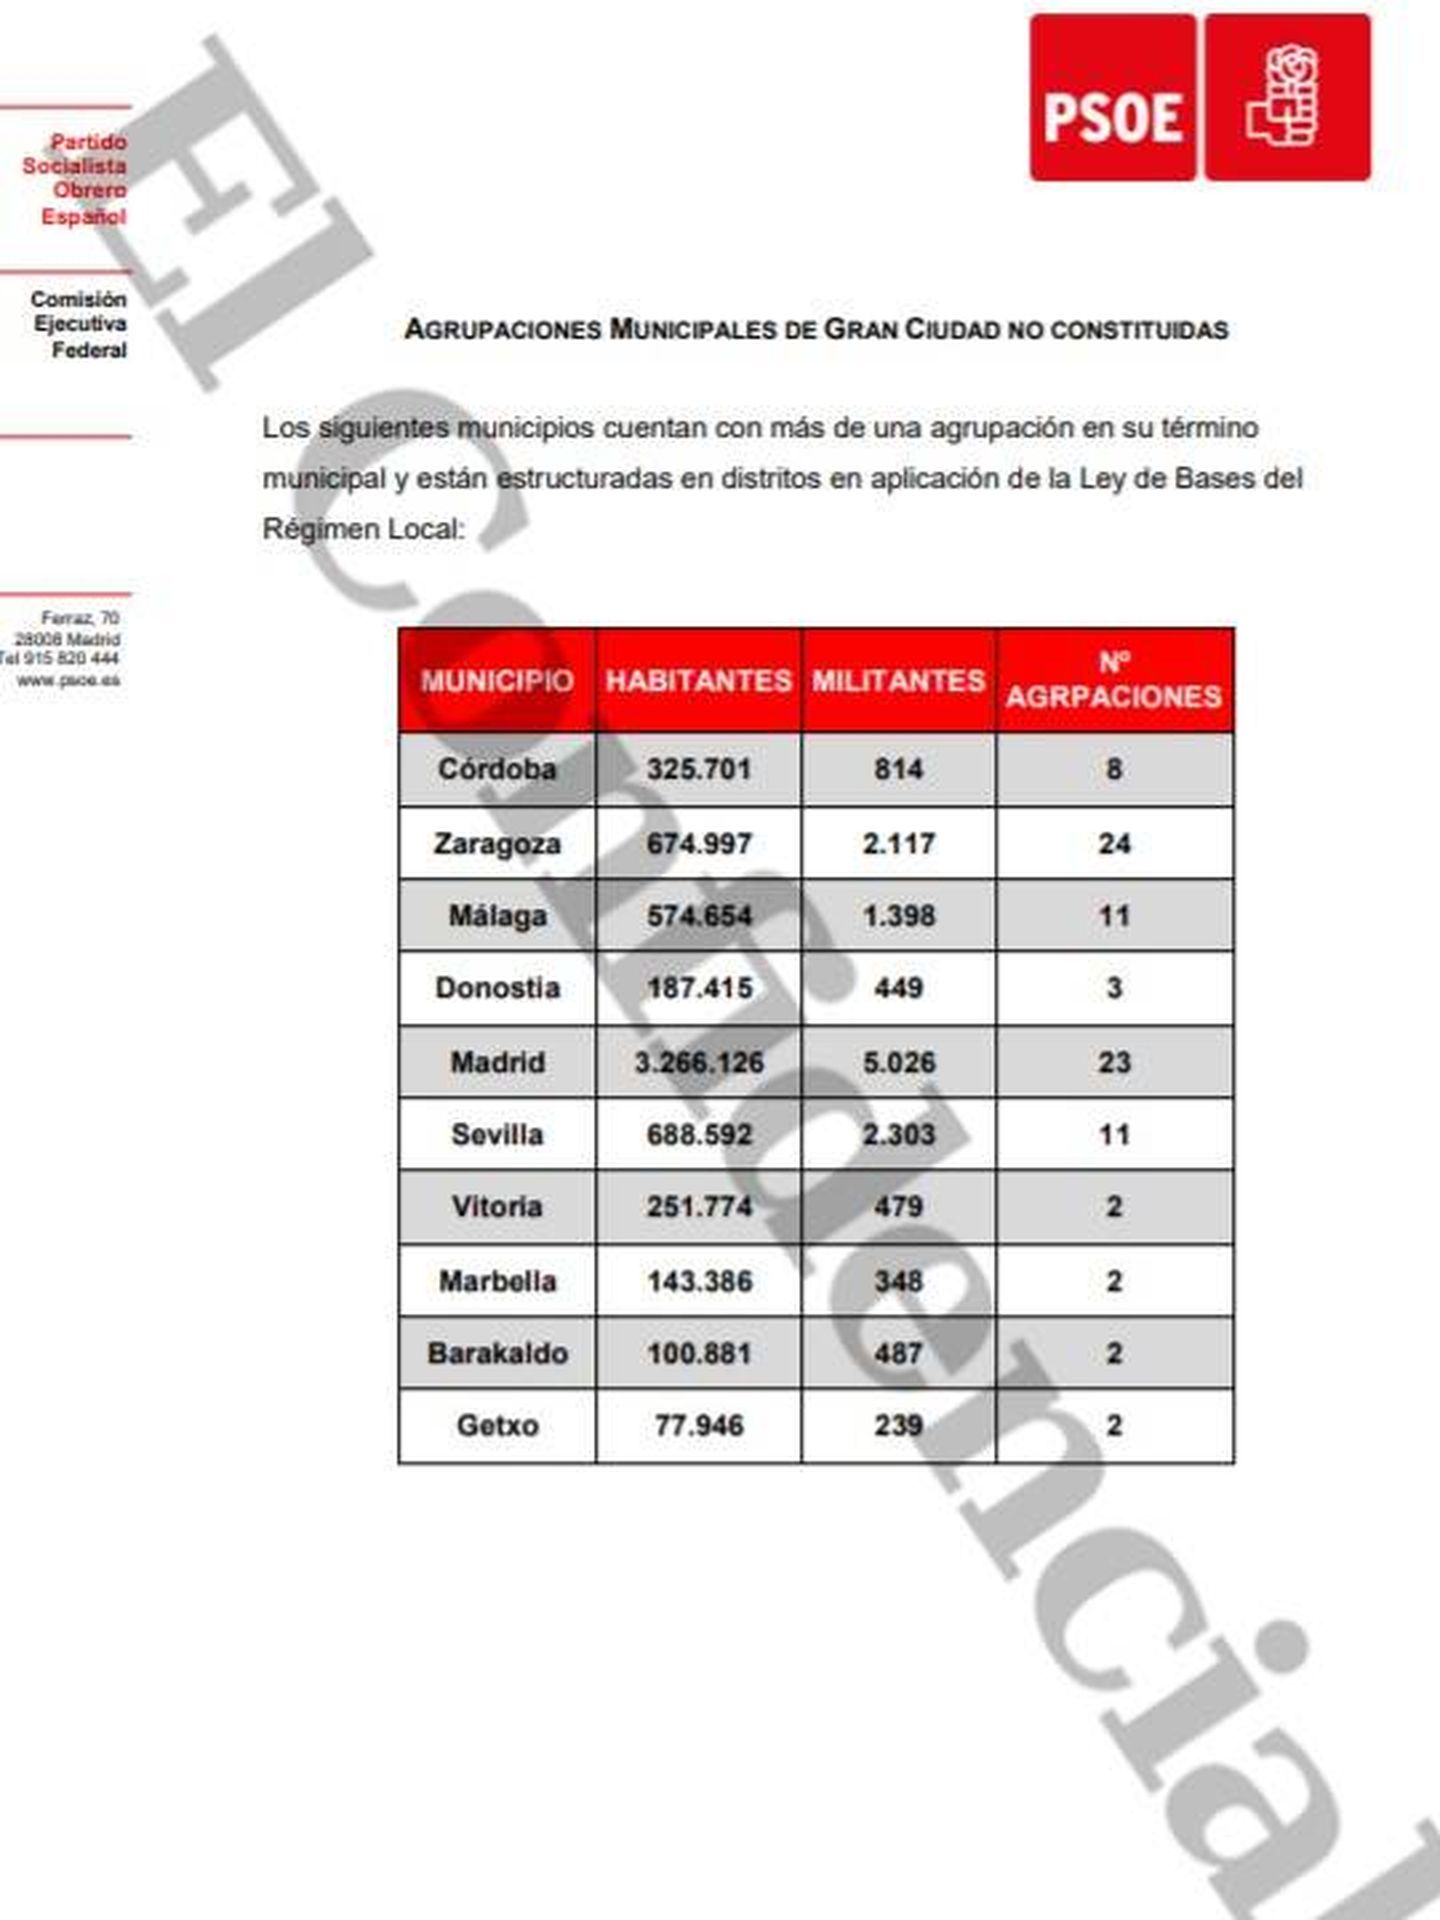 Consulte aquí en PDF las localidades en las que aún no hay constituida una agrupación municipal de gran ciudad del PSOE. 